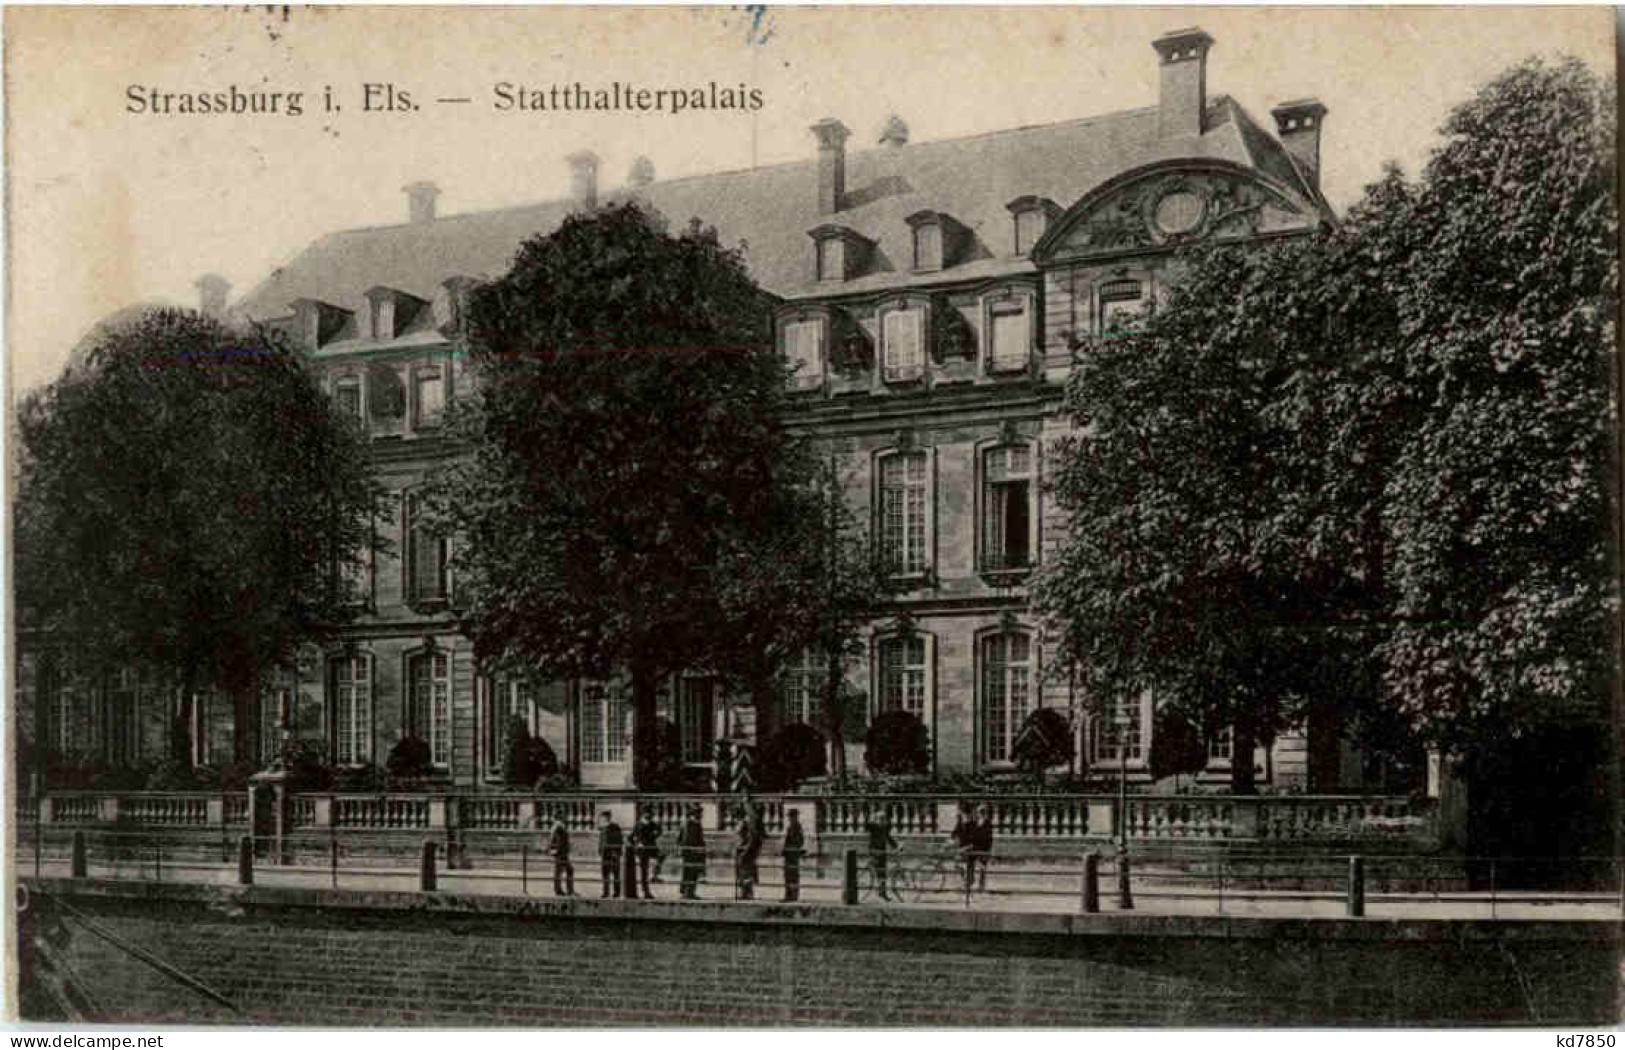 Strassburg - Statthalterpalais - Strasbourg